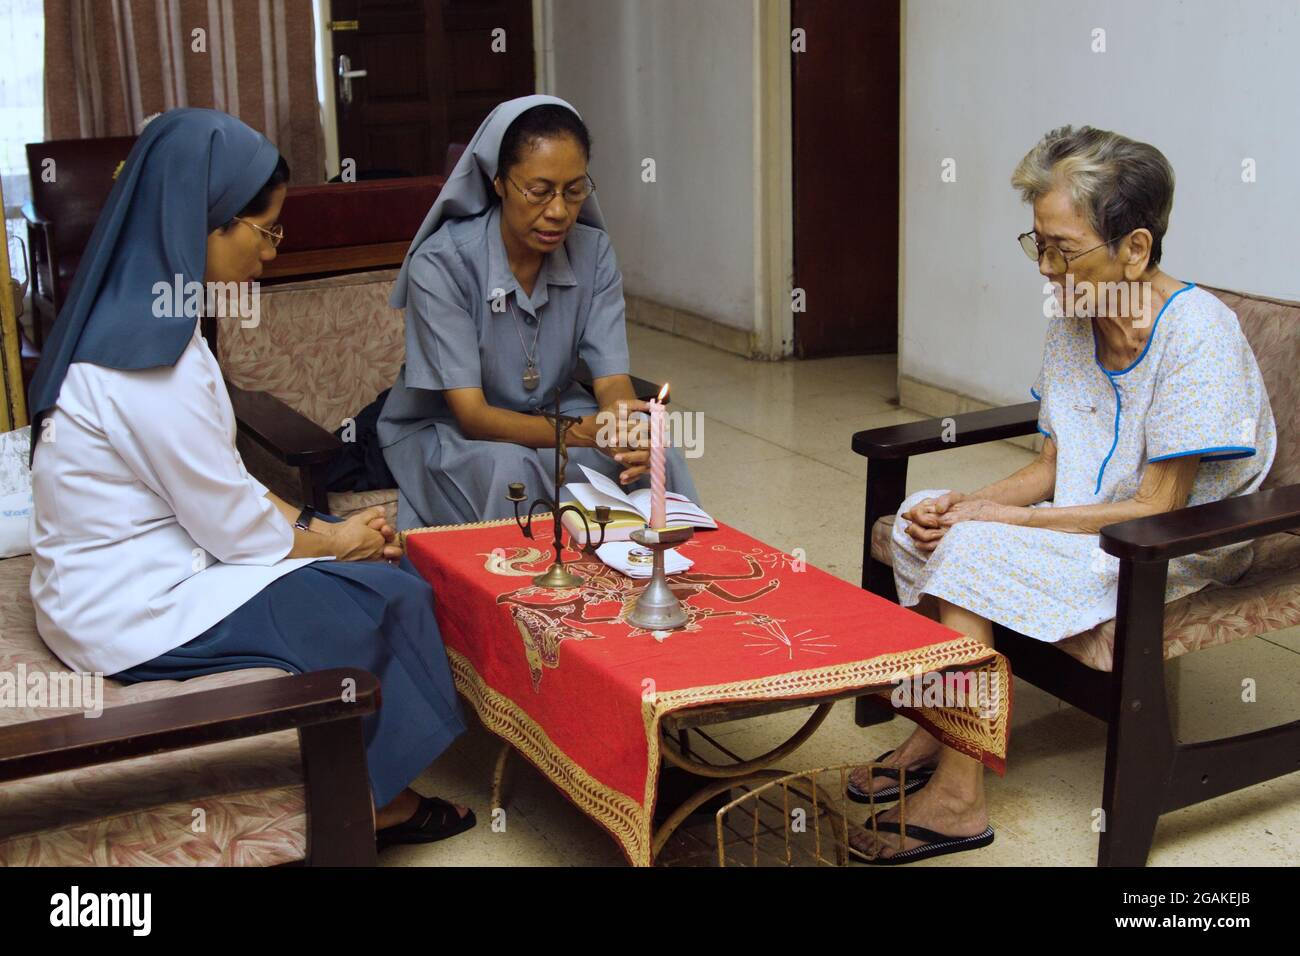 Zwei katholische Nonnen und eine alte Frau beten gemeinsam im Wohnzimmer. Stockfoto